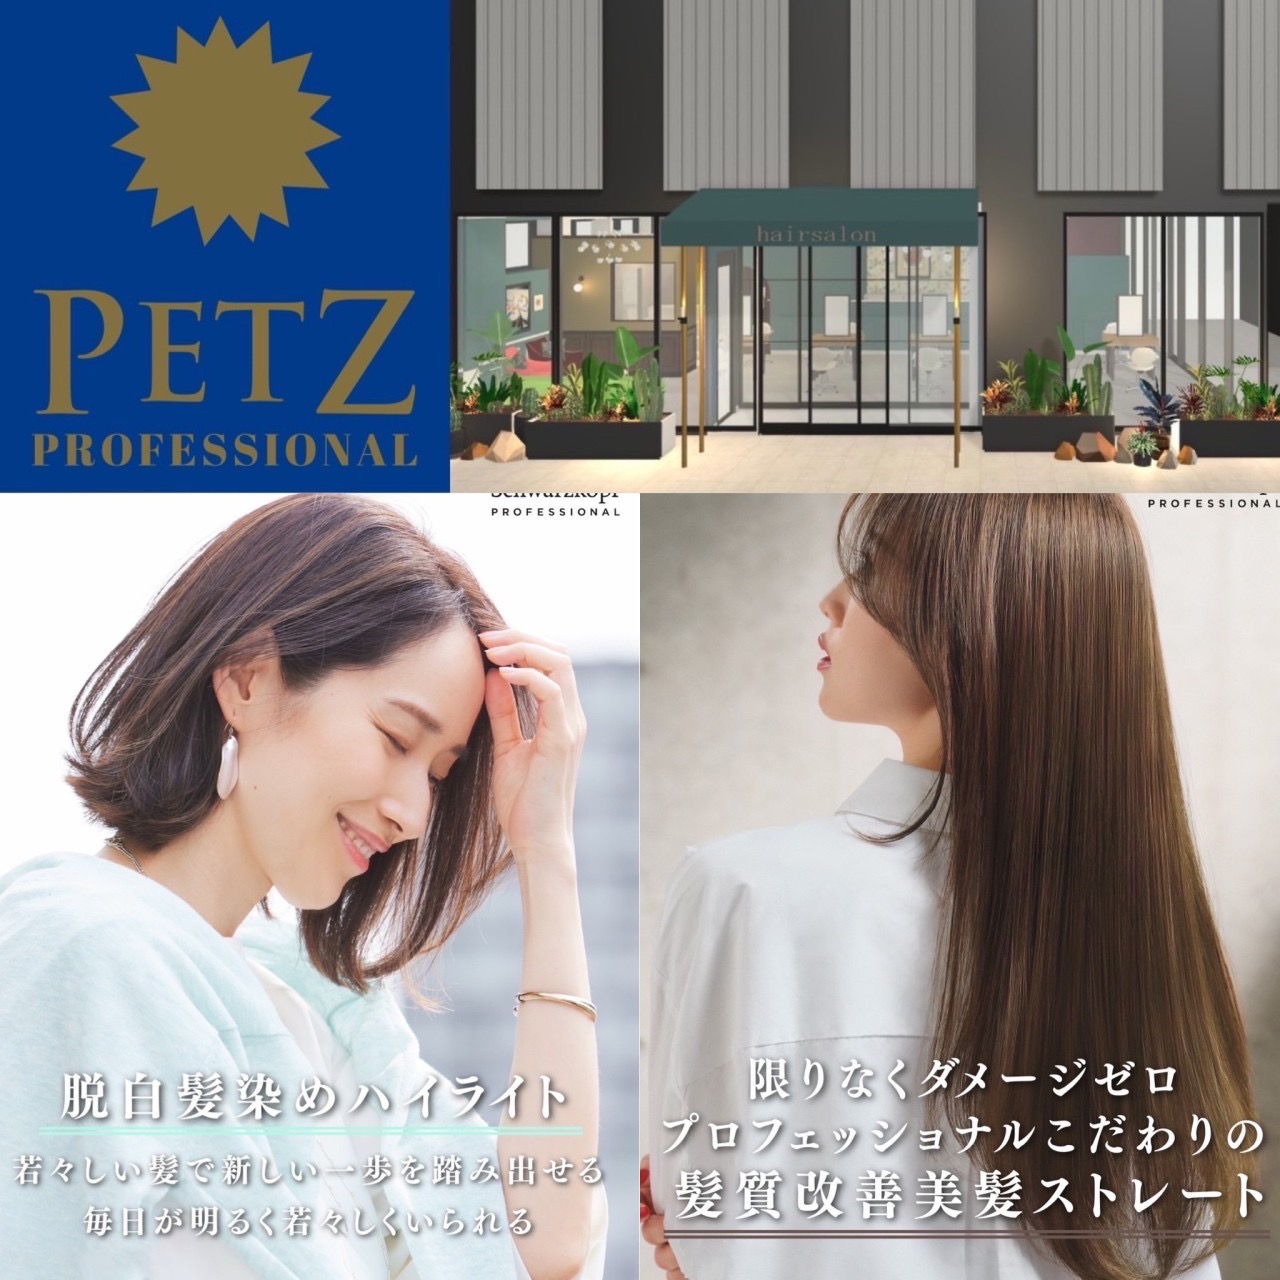 ペッツ新店舗【プロフェッショナル】オープン！